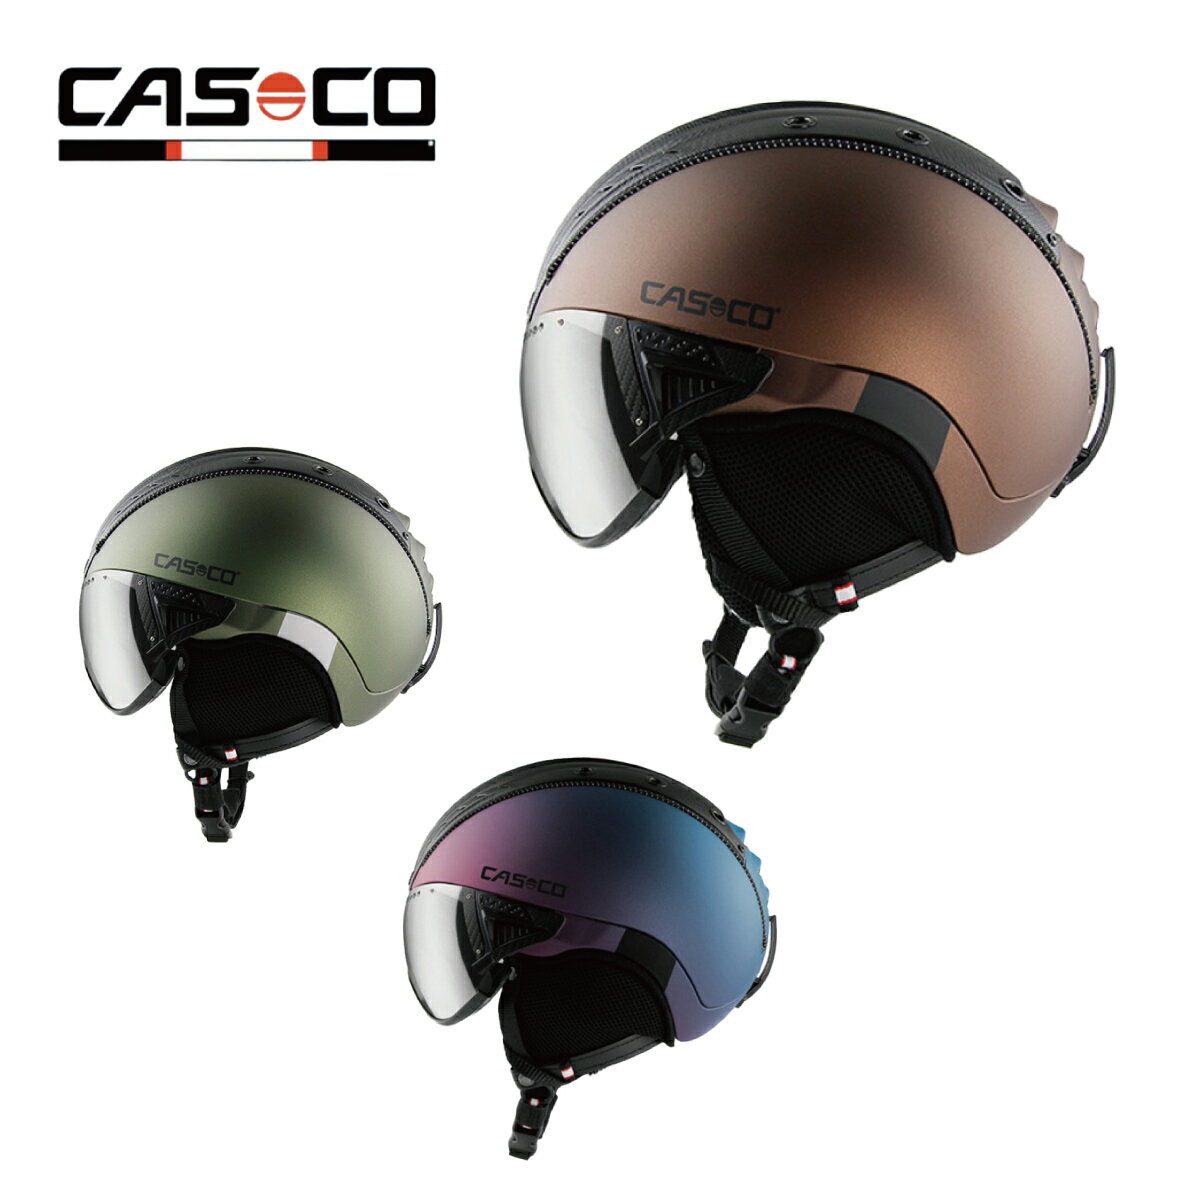 メーカー希望小売価格はメーカーカタログに基づいて掲載しています CASCO カスコ スキーヘルメット■SP-2 VISOR CARBONICSIZE: M(55-57cm)、 L(58-60cm)、 XL(60-62cm)SPEC・バイザー付き・ハードケース付きTECHNOLOGYCARBONIC protectionFITS with GLASSESCASCOサイクルヘルメットを、スノー用にアレンジしたVISORHELMETの世界的ベストセラーモデル。サイクルヘルメット並みの超軽量設計でセーフティーバイザーシステムによる転倒時の首絵の負担も軽減させます。バイザーはゴム引きでしっかり顔に密着するので、空気の侵入を軽減させ、ゴーグルに近い感覚でお使いいただけます。更にバイザー上部のふちが、ヘルメット本体とフラットに装着される為、バイザー上部からの雪や雫の侵入も防ぎます。 SIZE:M/L/XLCOLOR:Black/Brown/White